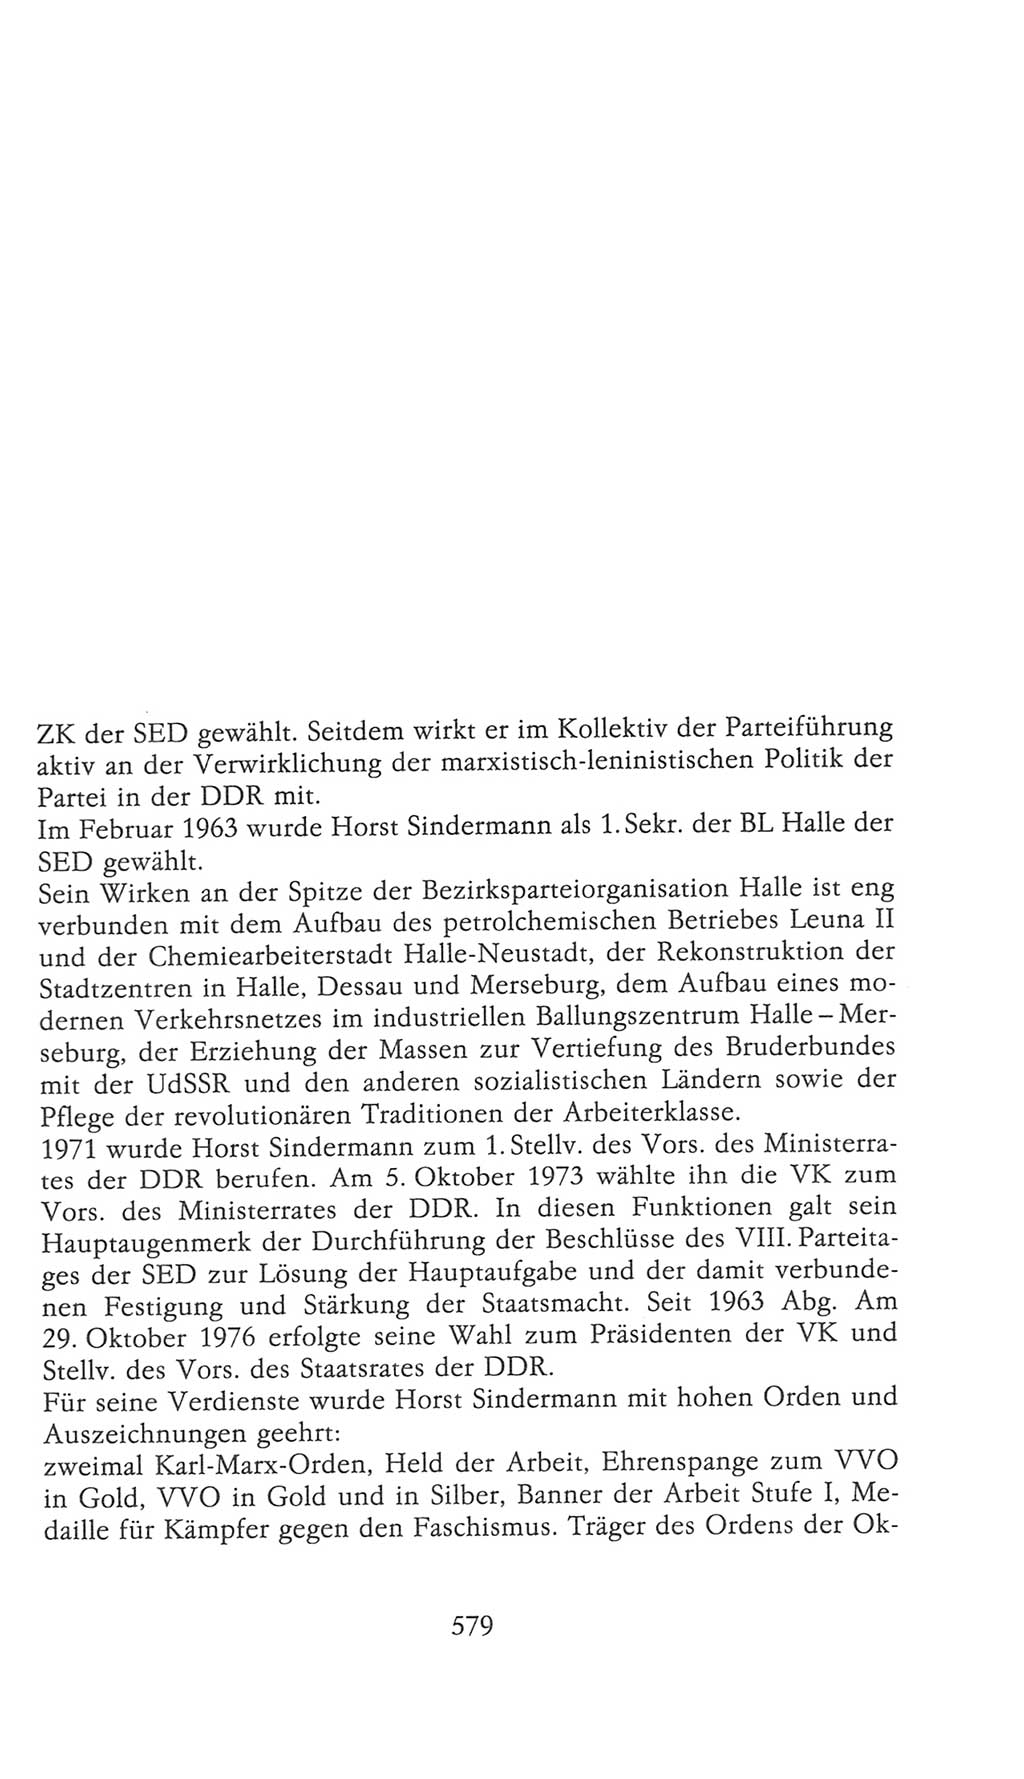 Volkskammer (VK) der Deutschen Demokratischen Republik (DDR), 9. Wahlperiode 1986-1990, Seite 579 (VK. DDR 9. WP. 1986-1990, S. 579)